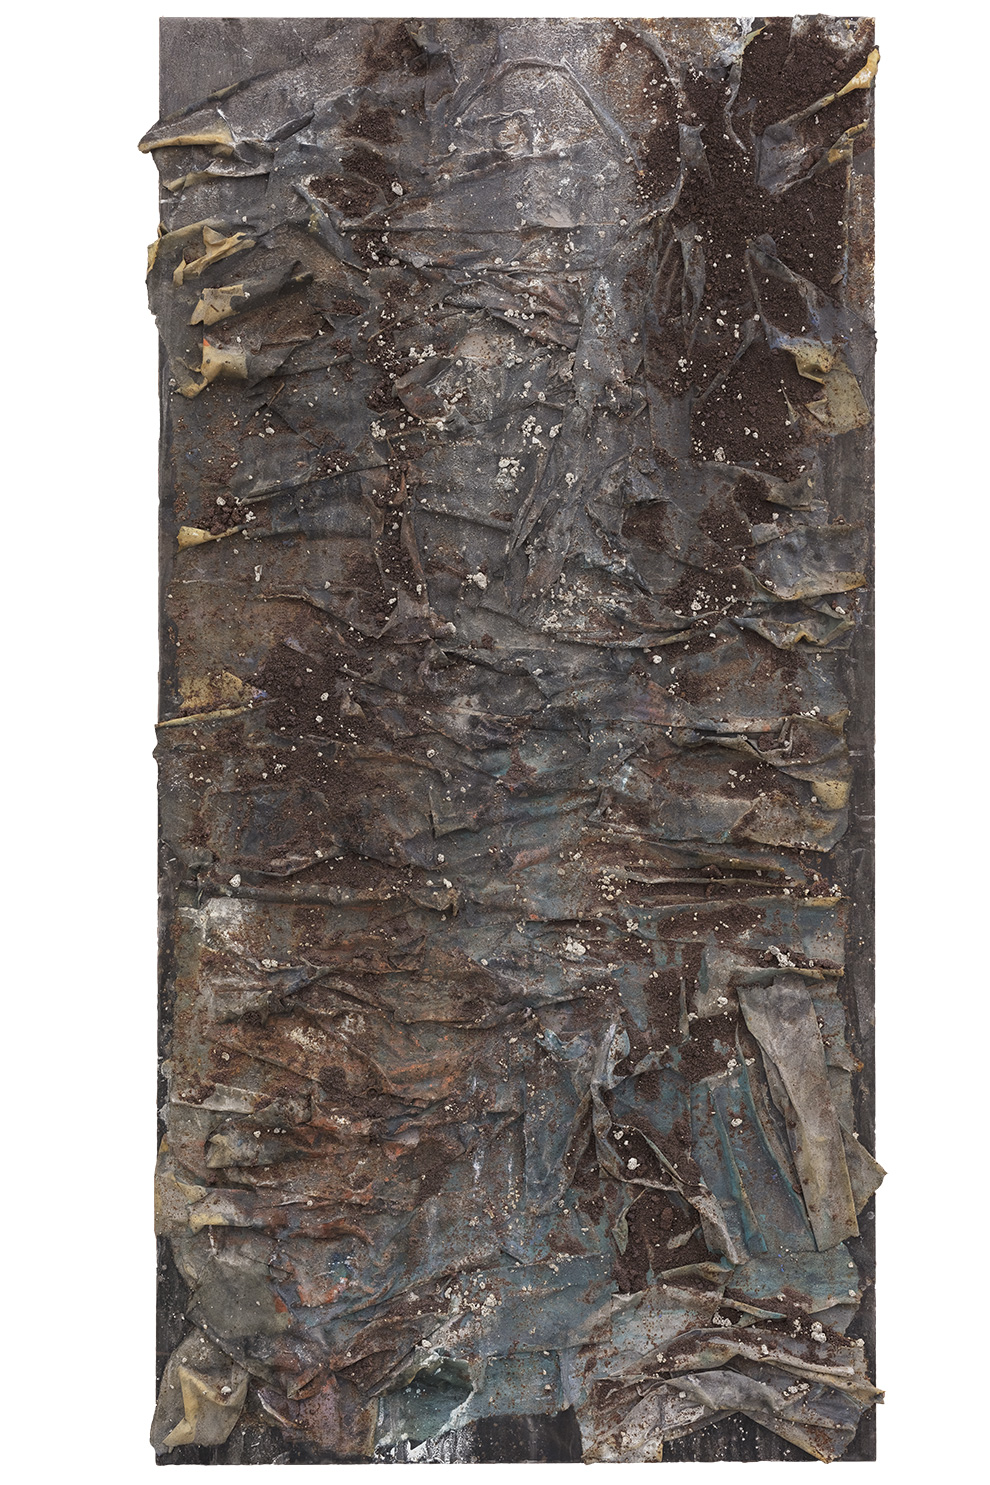 《书卷》二十六-180x540cm--木质构造、麻纸、矿物·植物·土质颜料-、金银粉、金属渣、箔--2018年.jpg